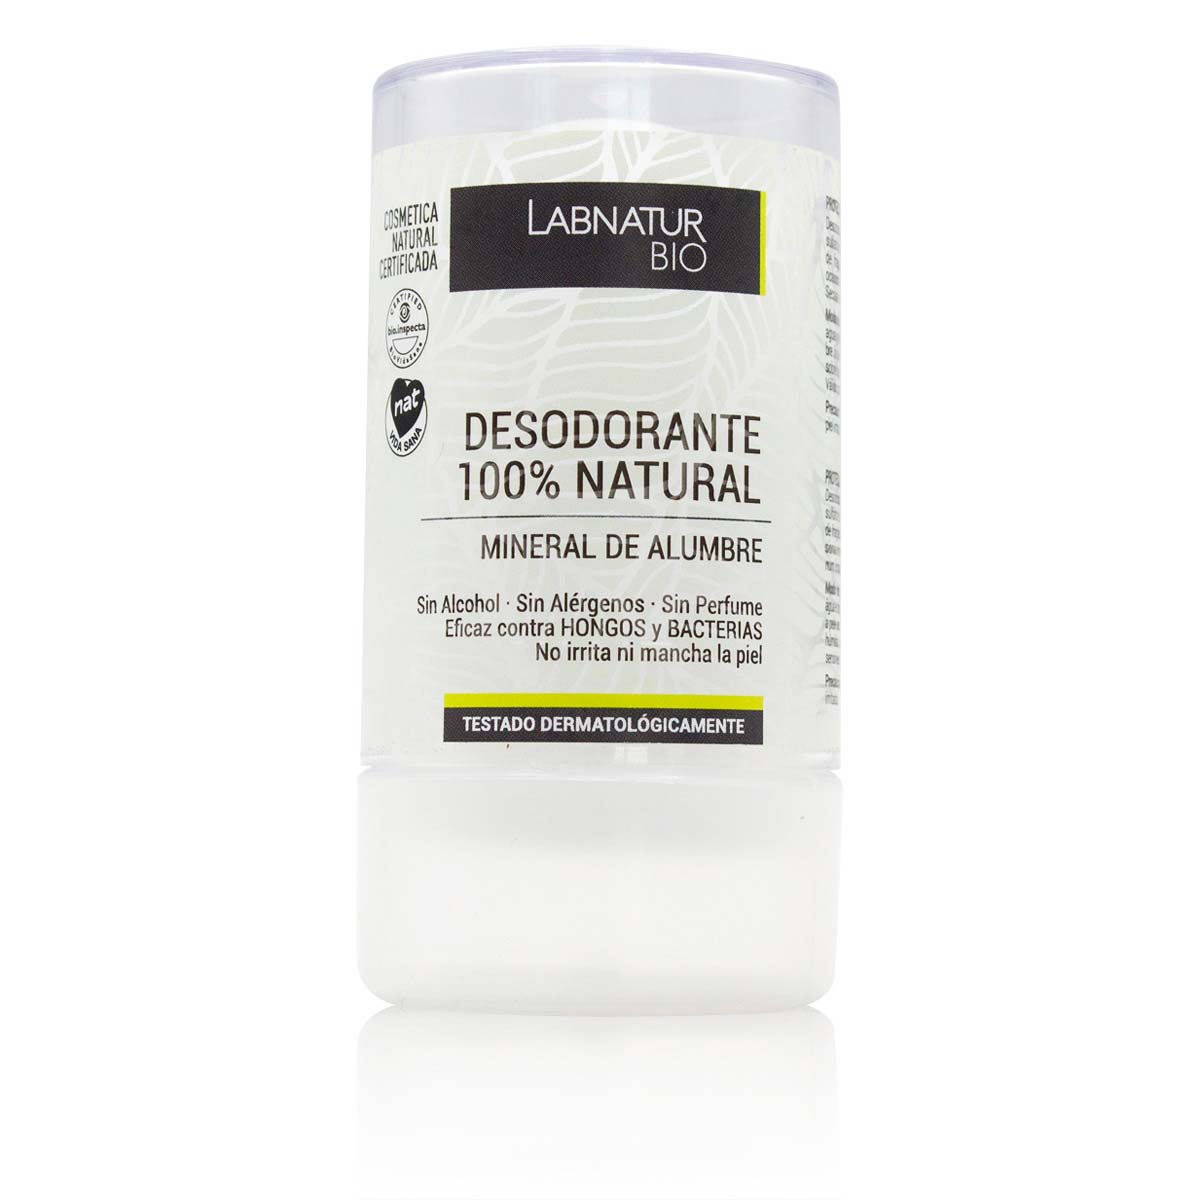 Comprar Desodorante 100% Piedra de Alumbre Labnatur Bio